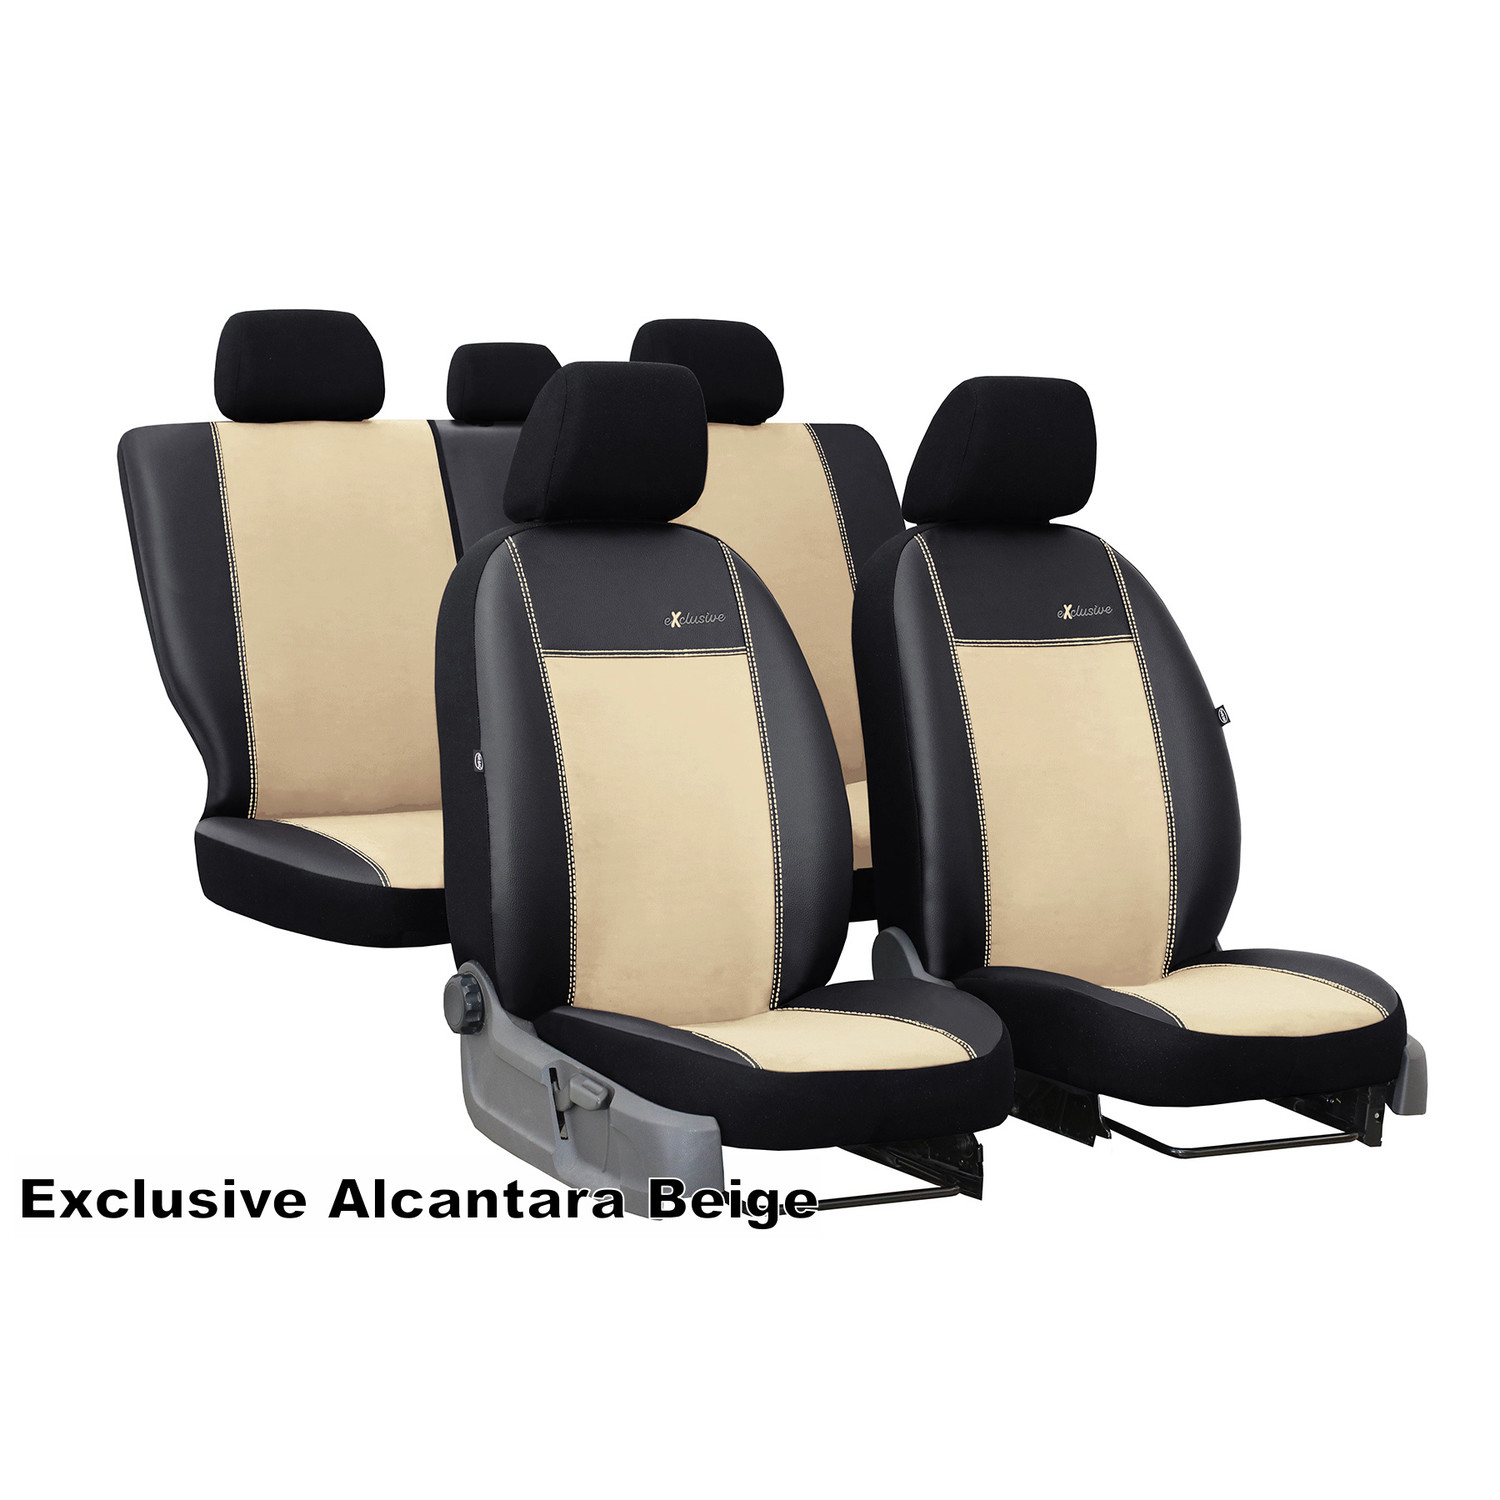 Sitze / Sitzbezüge - Innenausstattung (Passend für Marke: Audi)